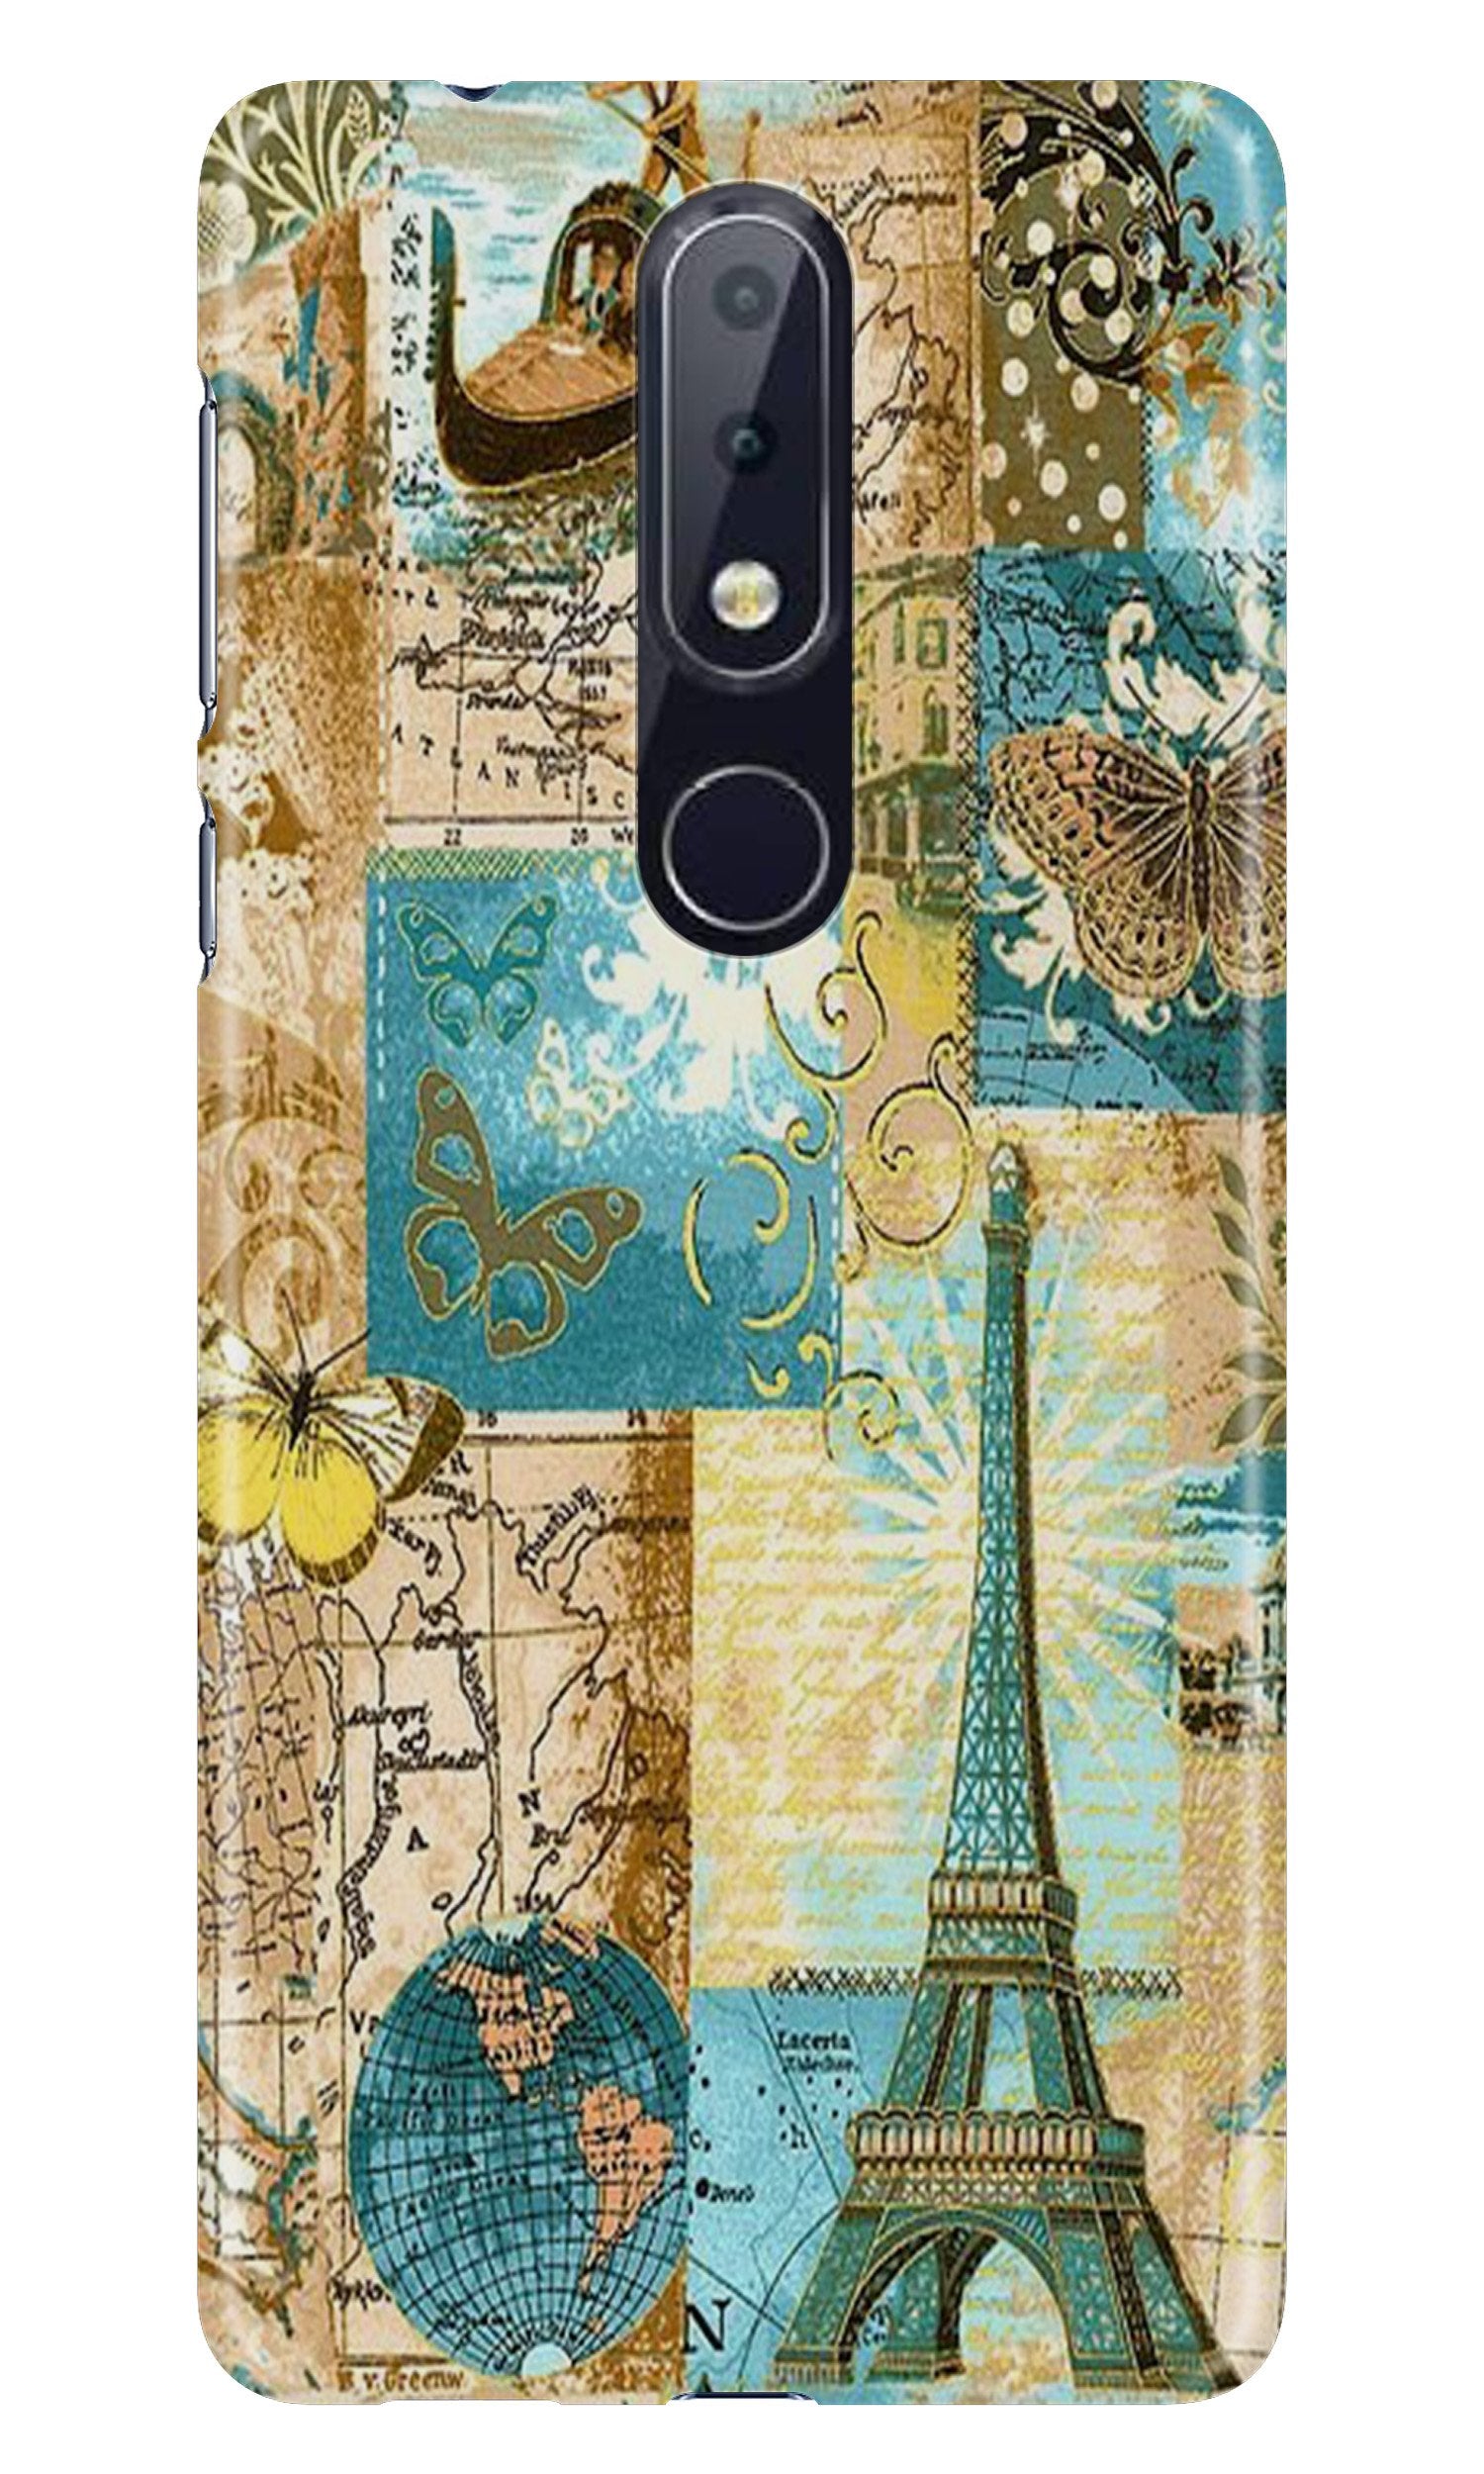 Travel Eiffel TowerCase for Nokia 7.1 (Design No. 206)